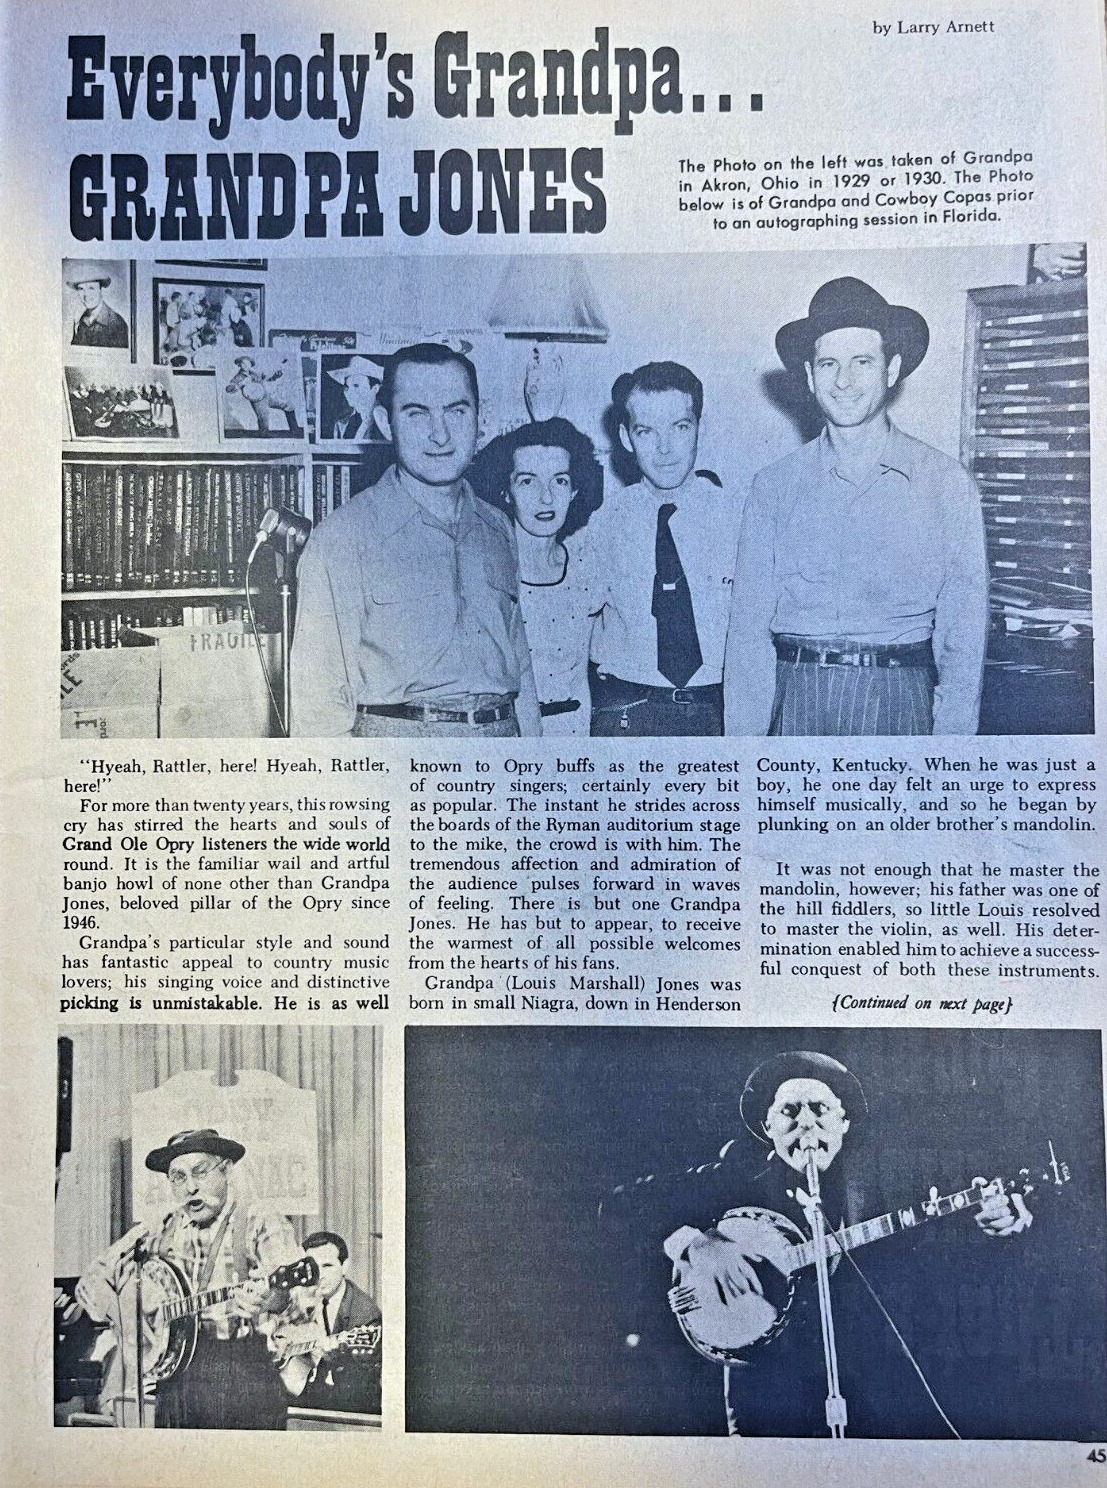 1968 Country Performer Grandpa Jones